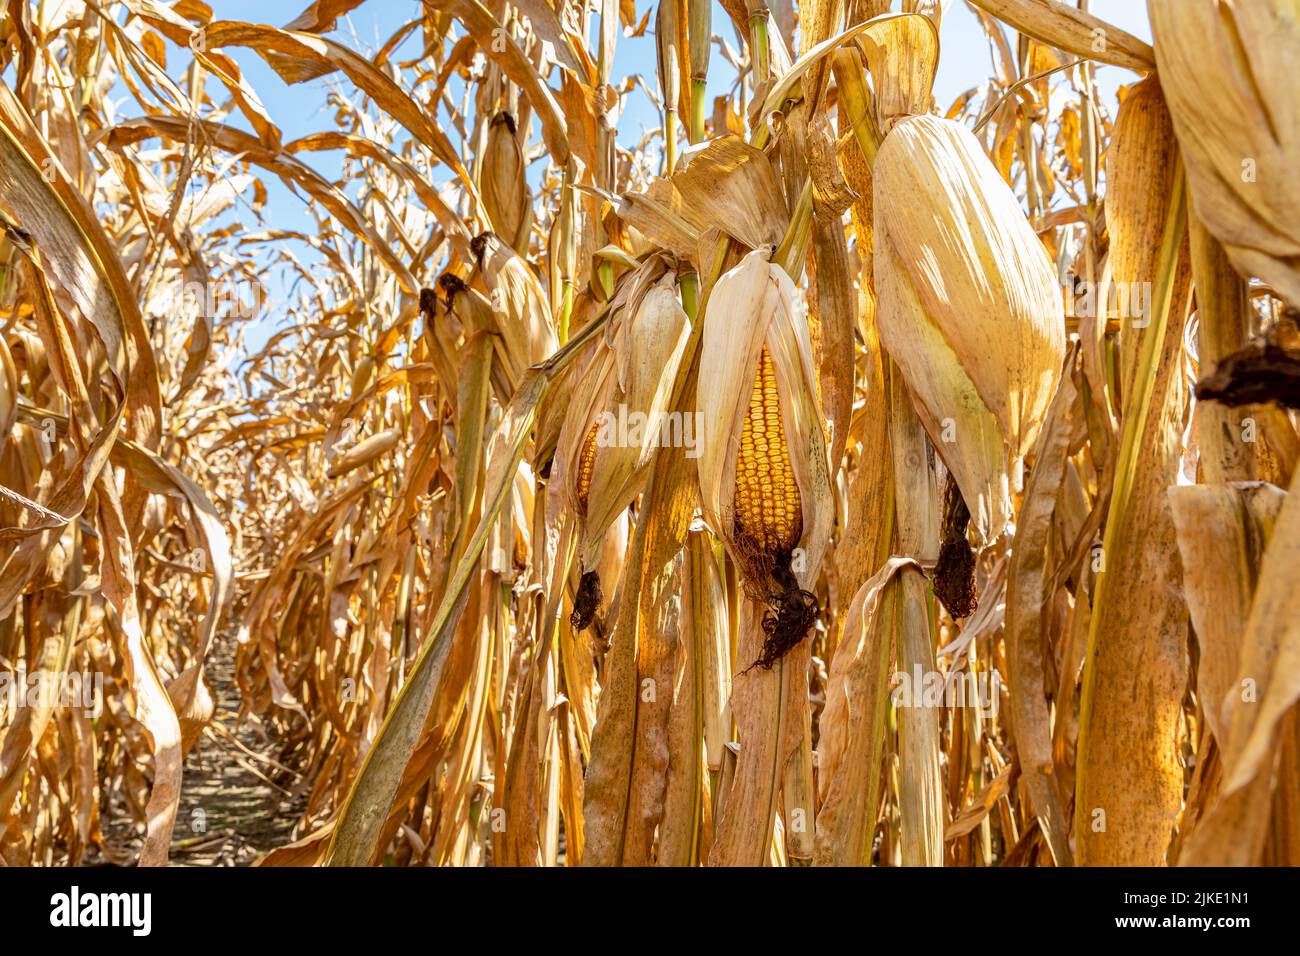 Mazorca de maíz en el campo de maíz lista para la cosecha. La estación de la cosecha, la agricultura, y el concepto del etanol. Foto de stock